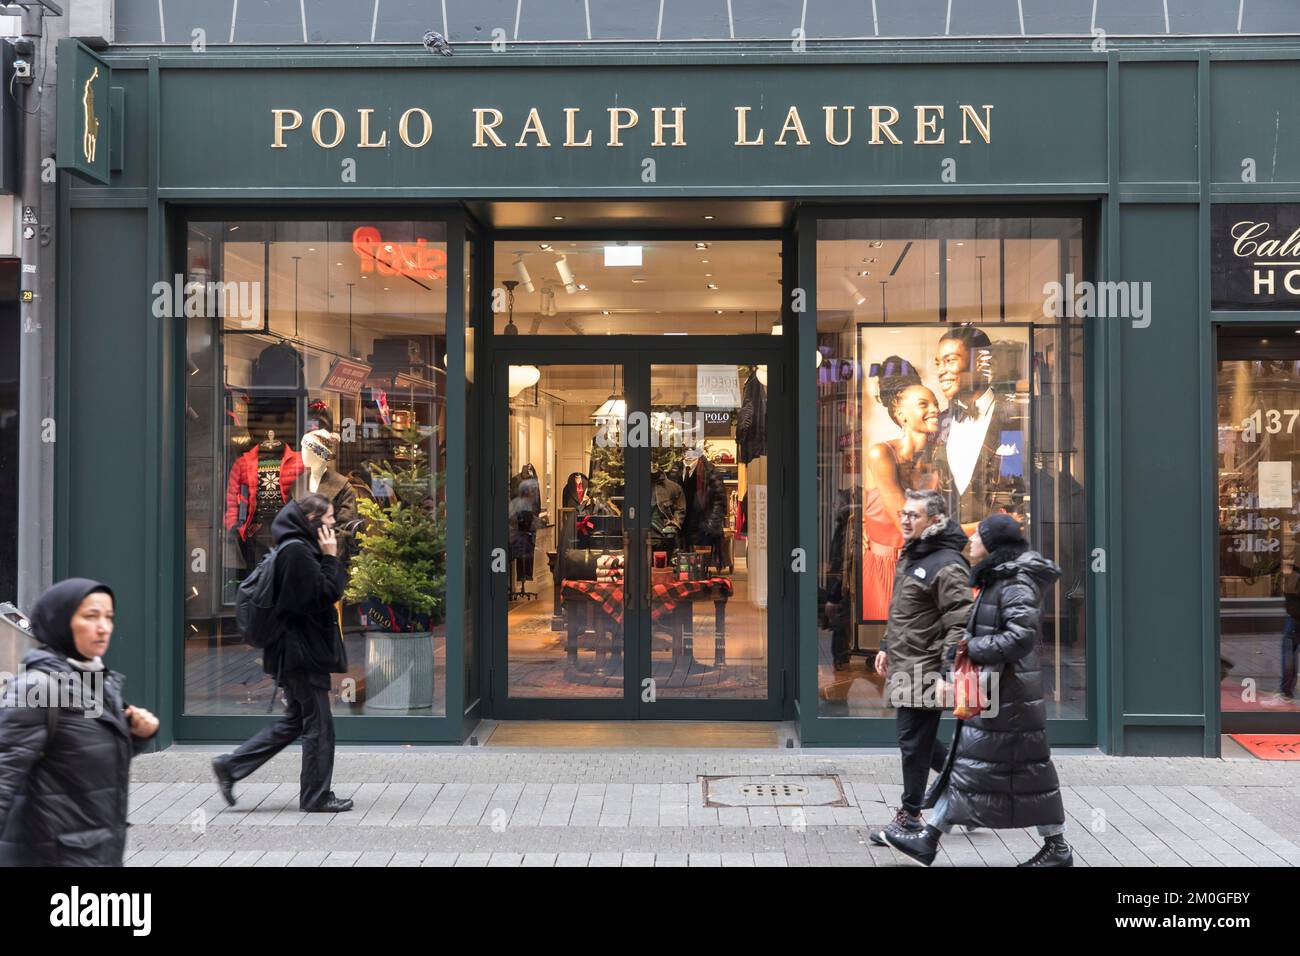 Polo Ralph Lauren sur la rue commerçante Hohe Strasse, Cologne, Allemagne. Polo Ralph Lauren Store auf der Einkaufsstrasse Hohe Strasse, Koeln, de Banque D'Images